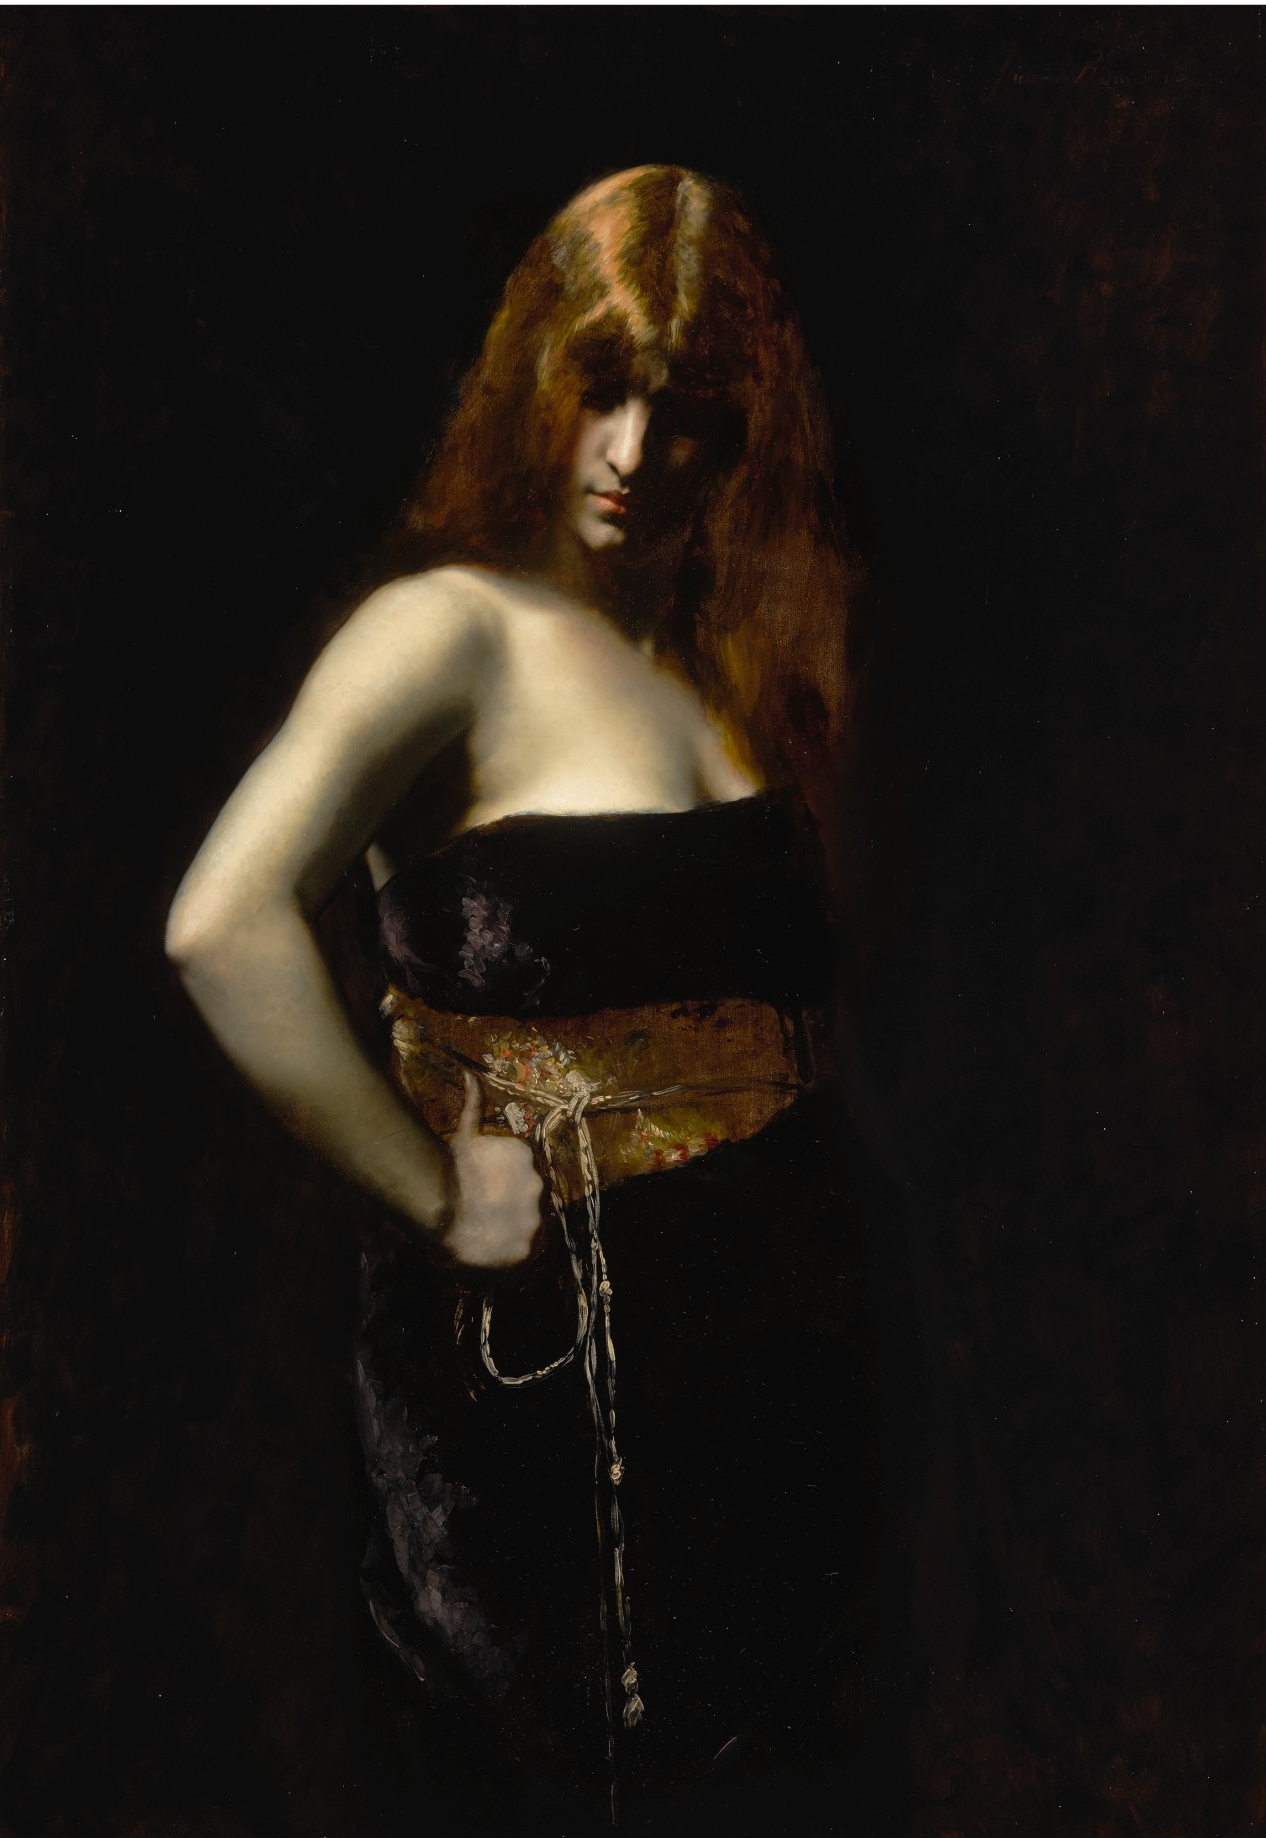 붉은 머리 여인의 초상화(Portrait of a Woman with a Red Hair) by Juana Romani - 19세기 후반 - 116.5 cm x 80 cm 